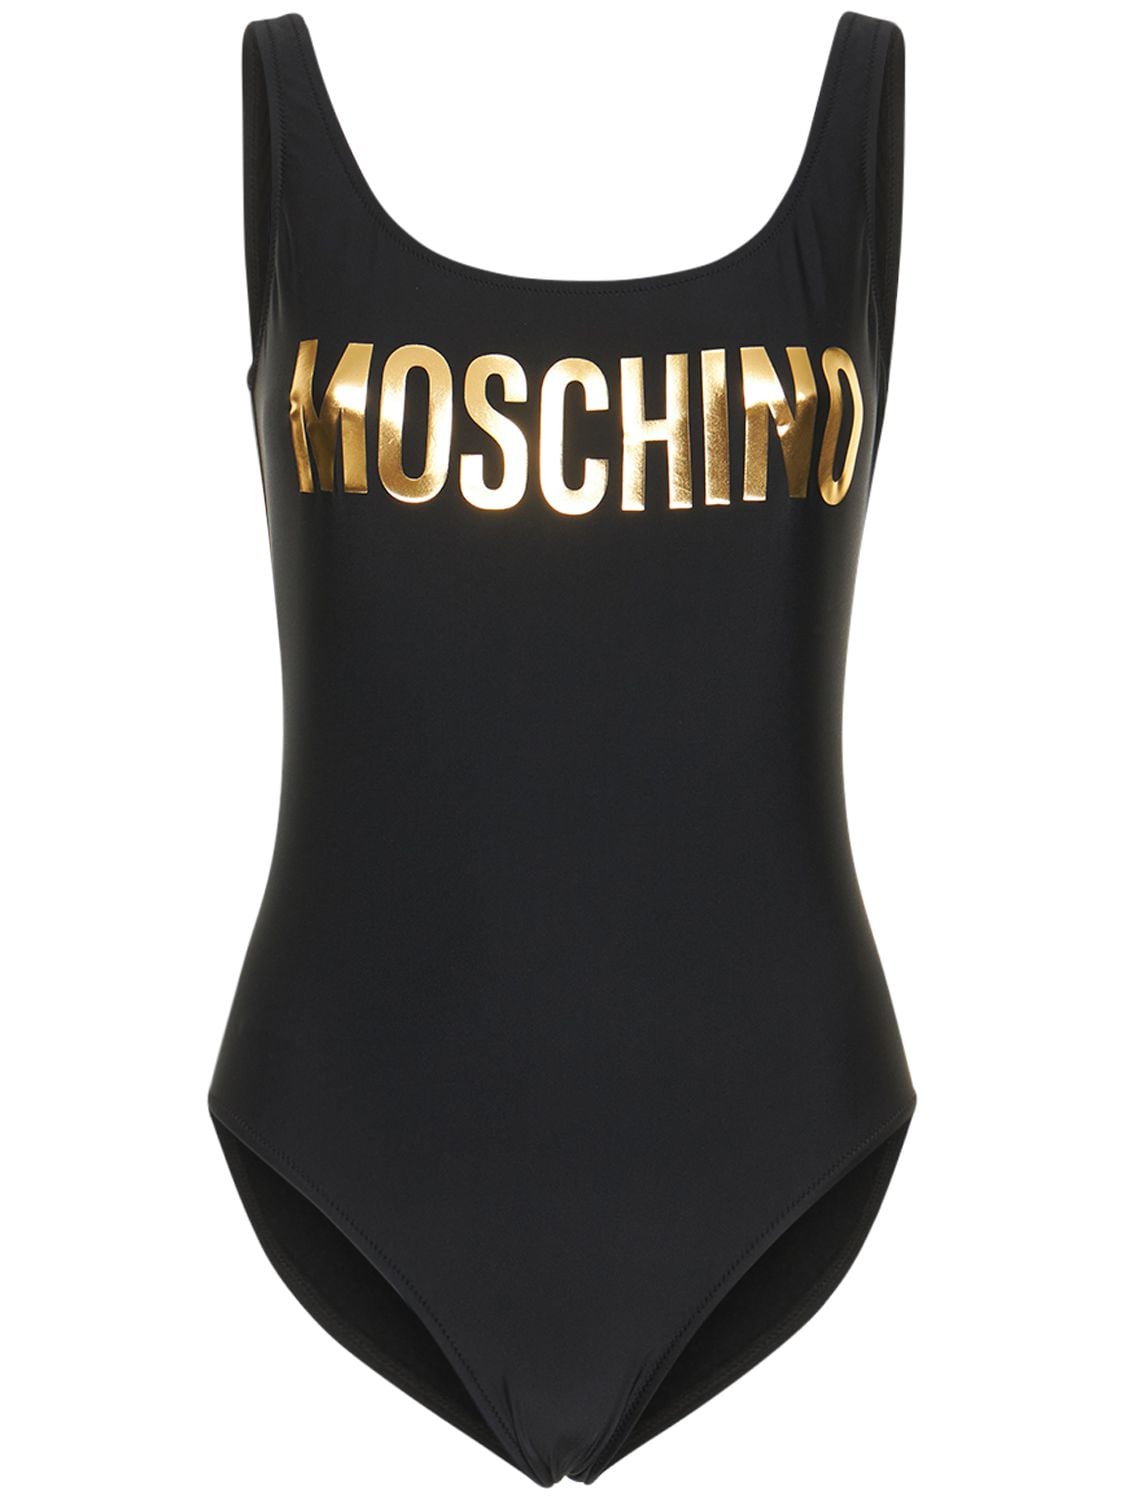 Moschino - Logo one piece swimsuit - Black/Gold | Luisaviaroma